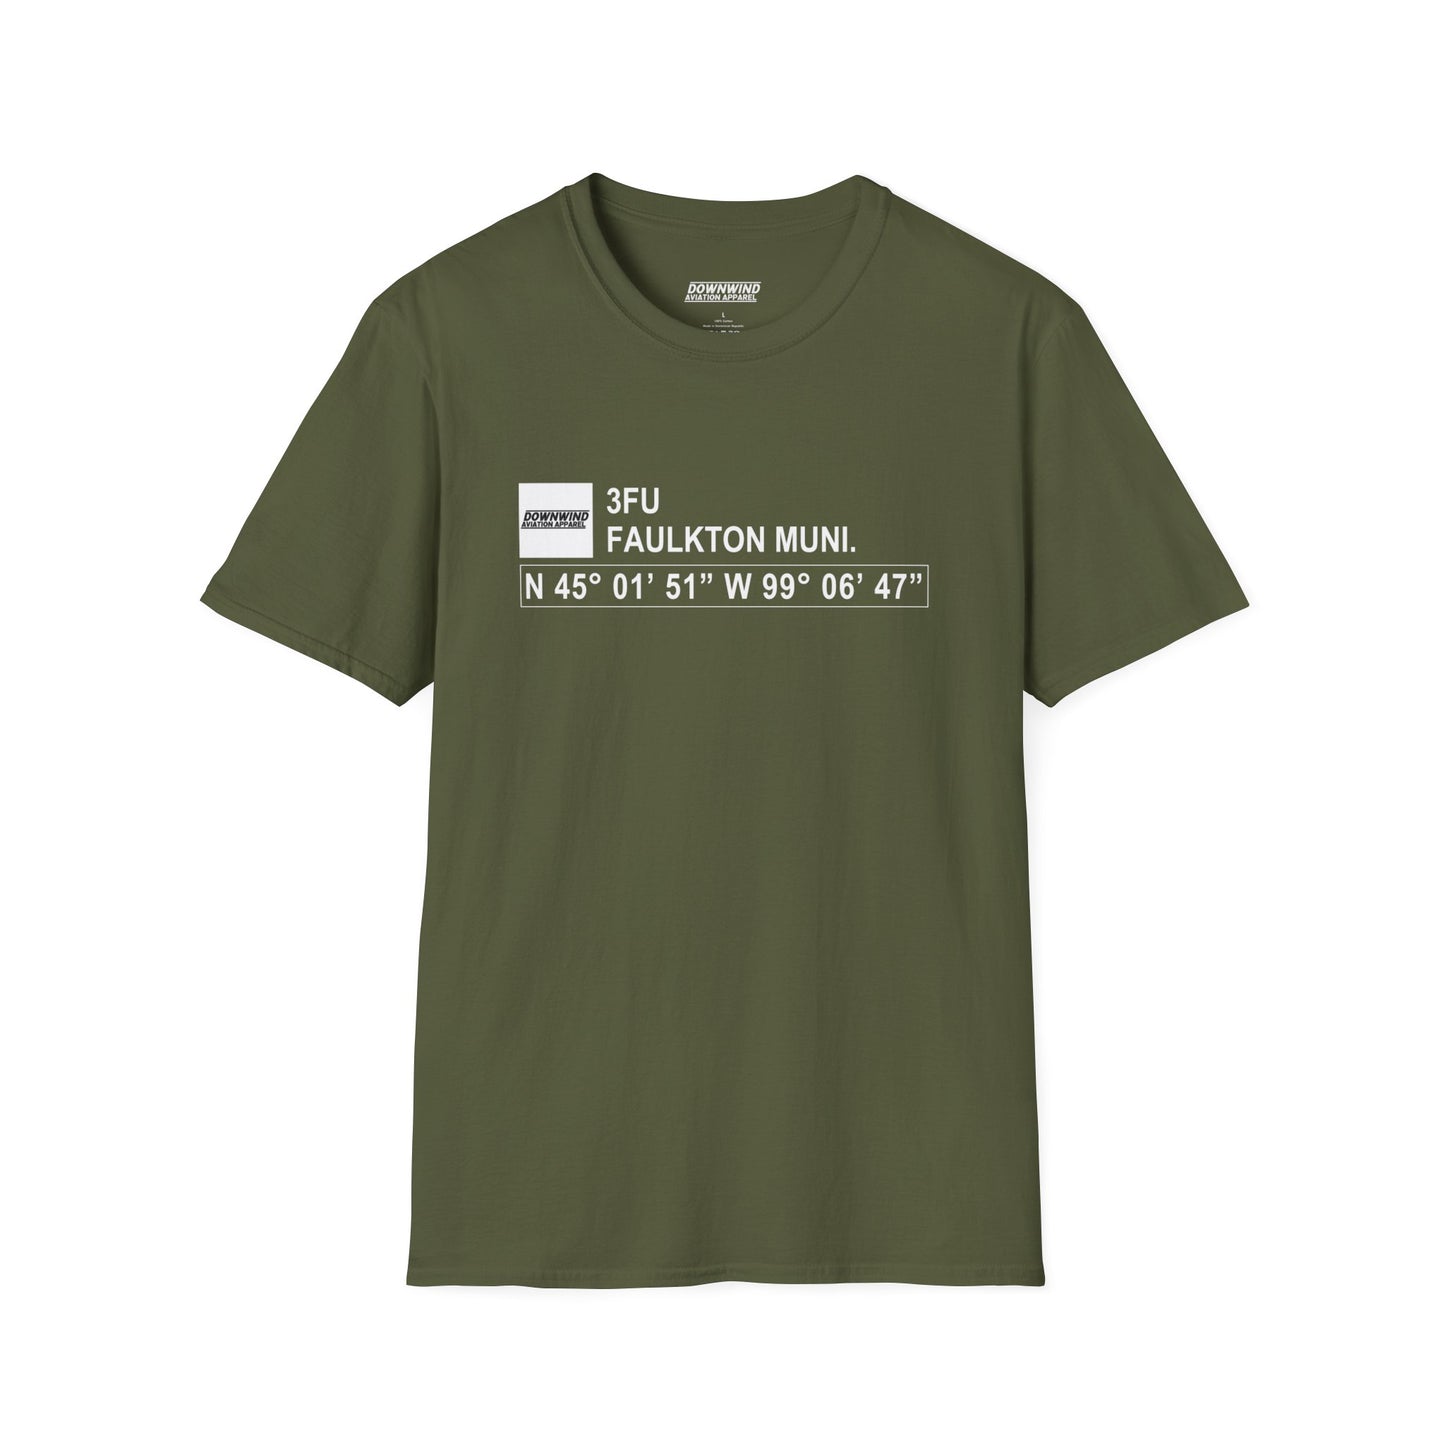 3FU / Faulkton Muni. T-Shirt